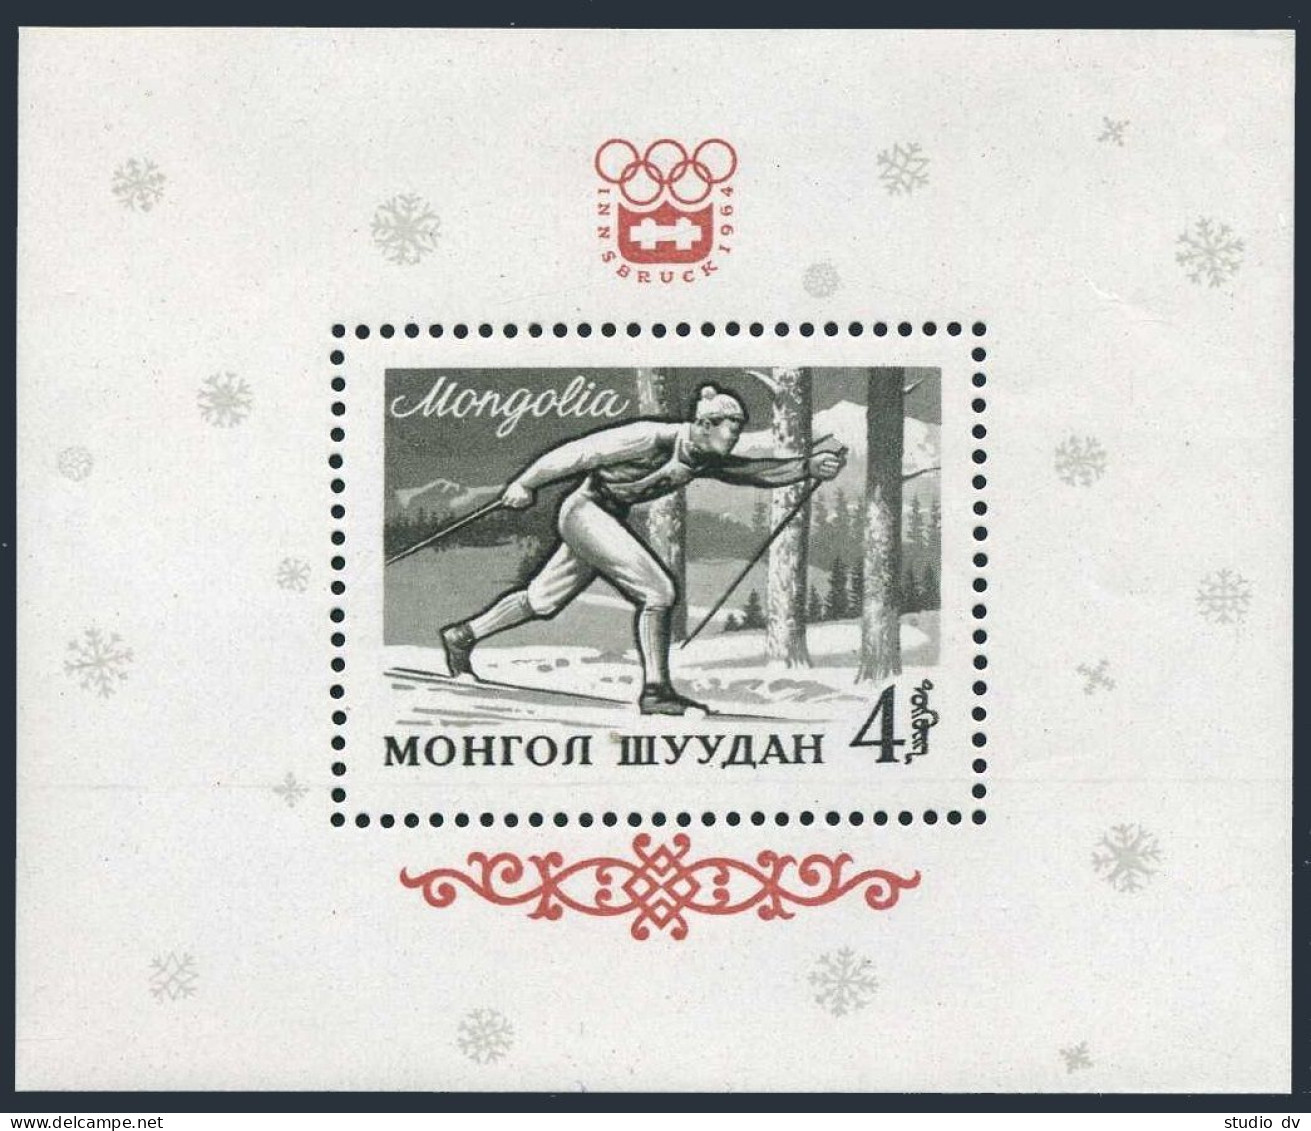 Mongolia 348, MNH. Michel 353 Bl.7. Olympics Innsbruck-1964. Skier. - Mongolia